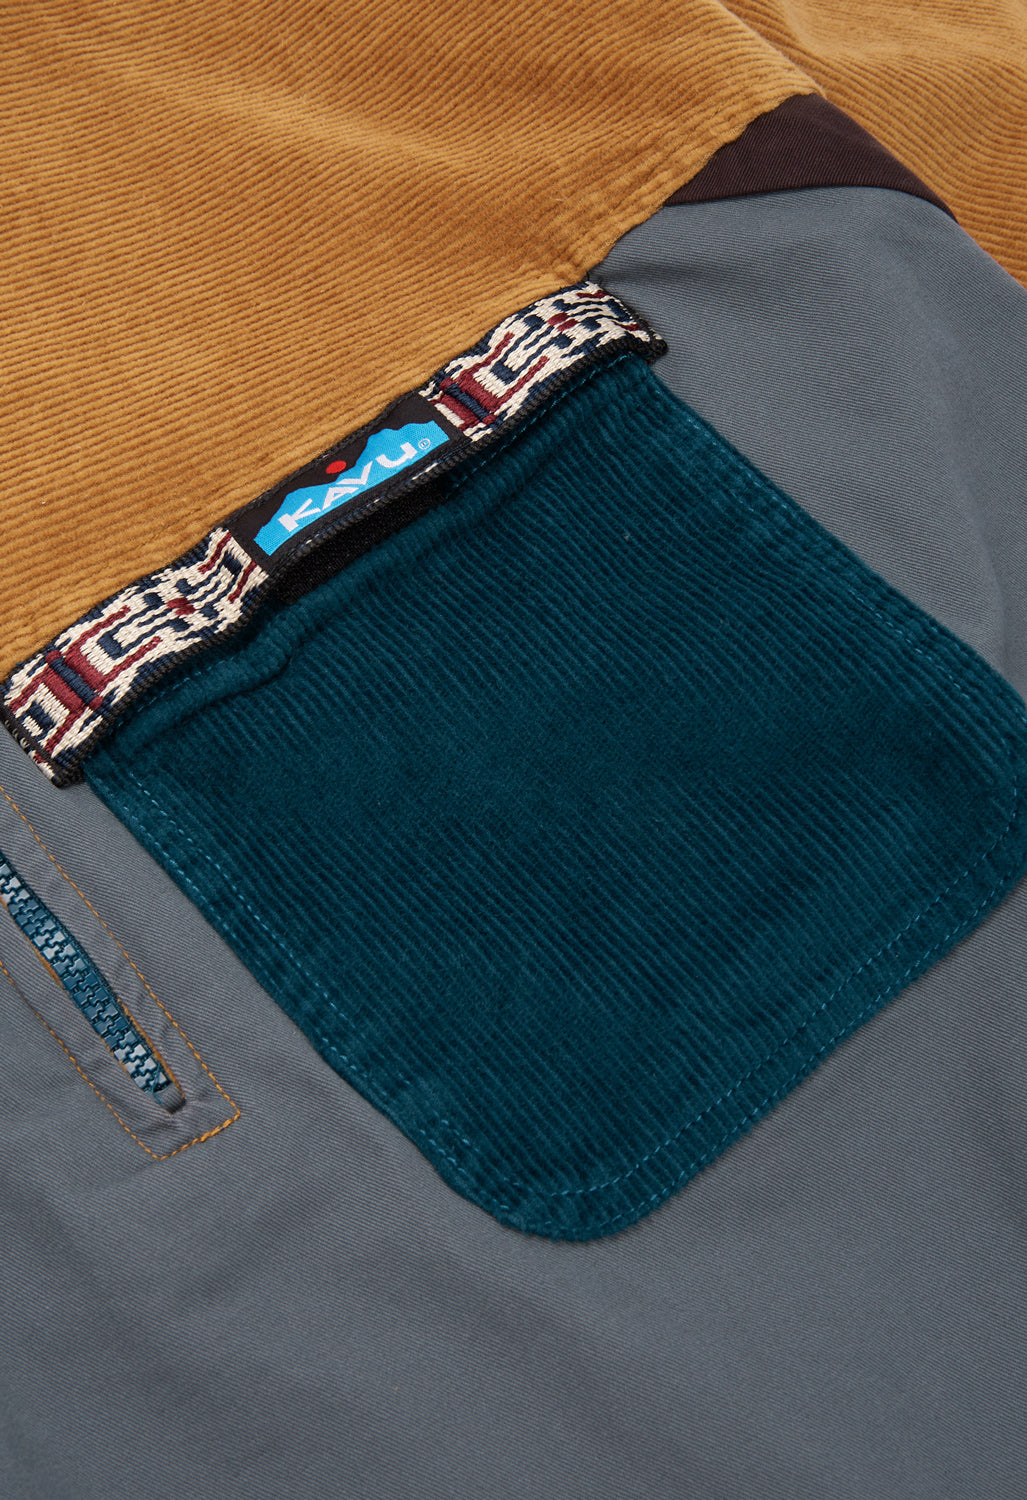 KAVU Men's Throwshirt Flex Half Zip Jacket - Bend Blend